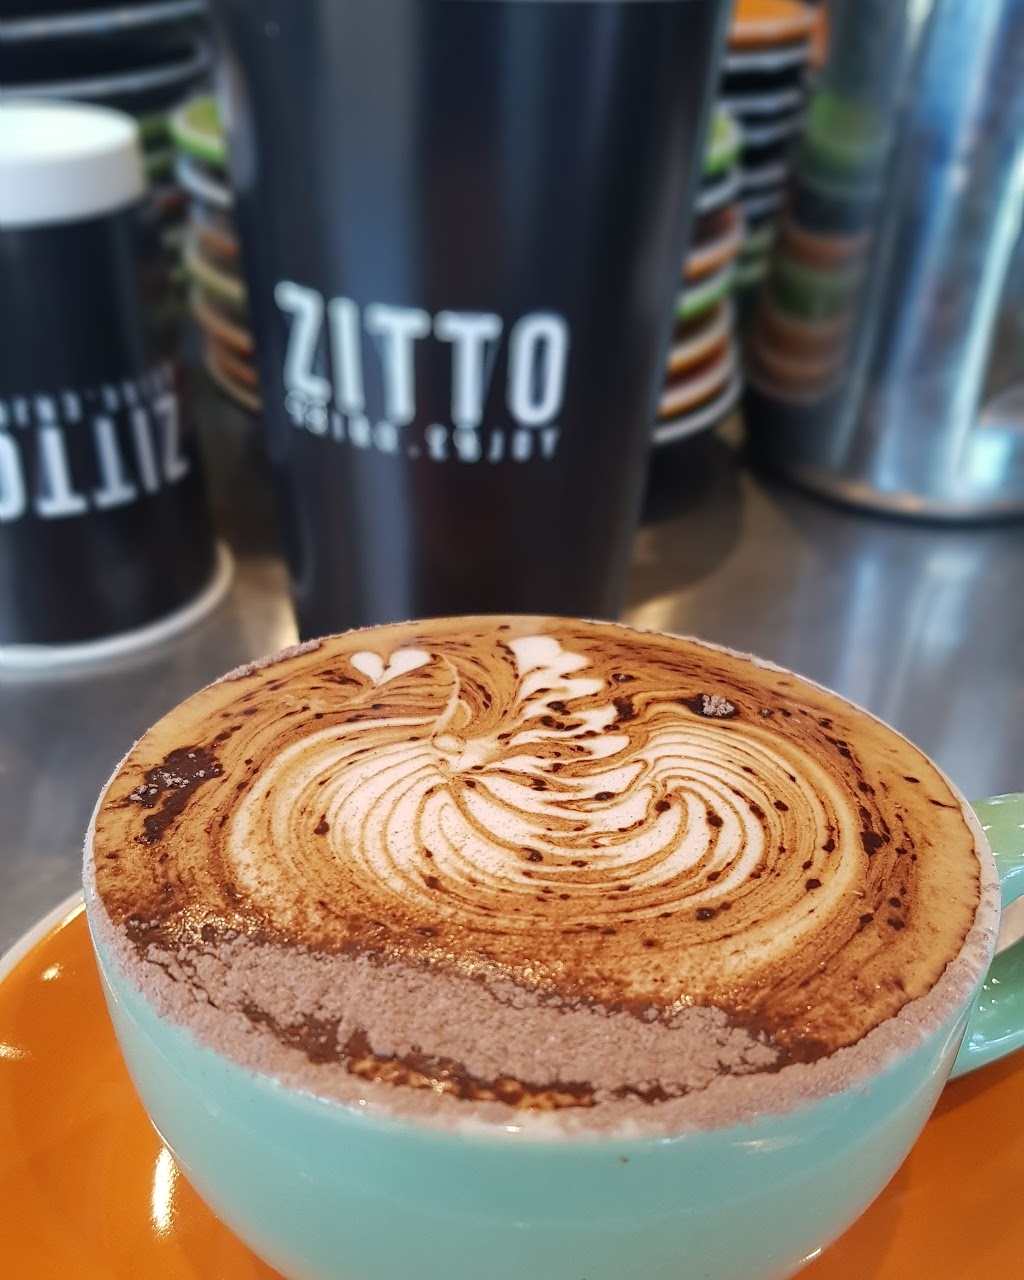 Zitto Café | cafe | Golden Grove Village, The Golden Way & The Grove Way, Golden Grove SA 5125, Australia | 0439087381 OR +61 439 087 381